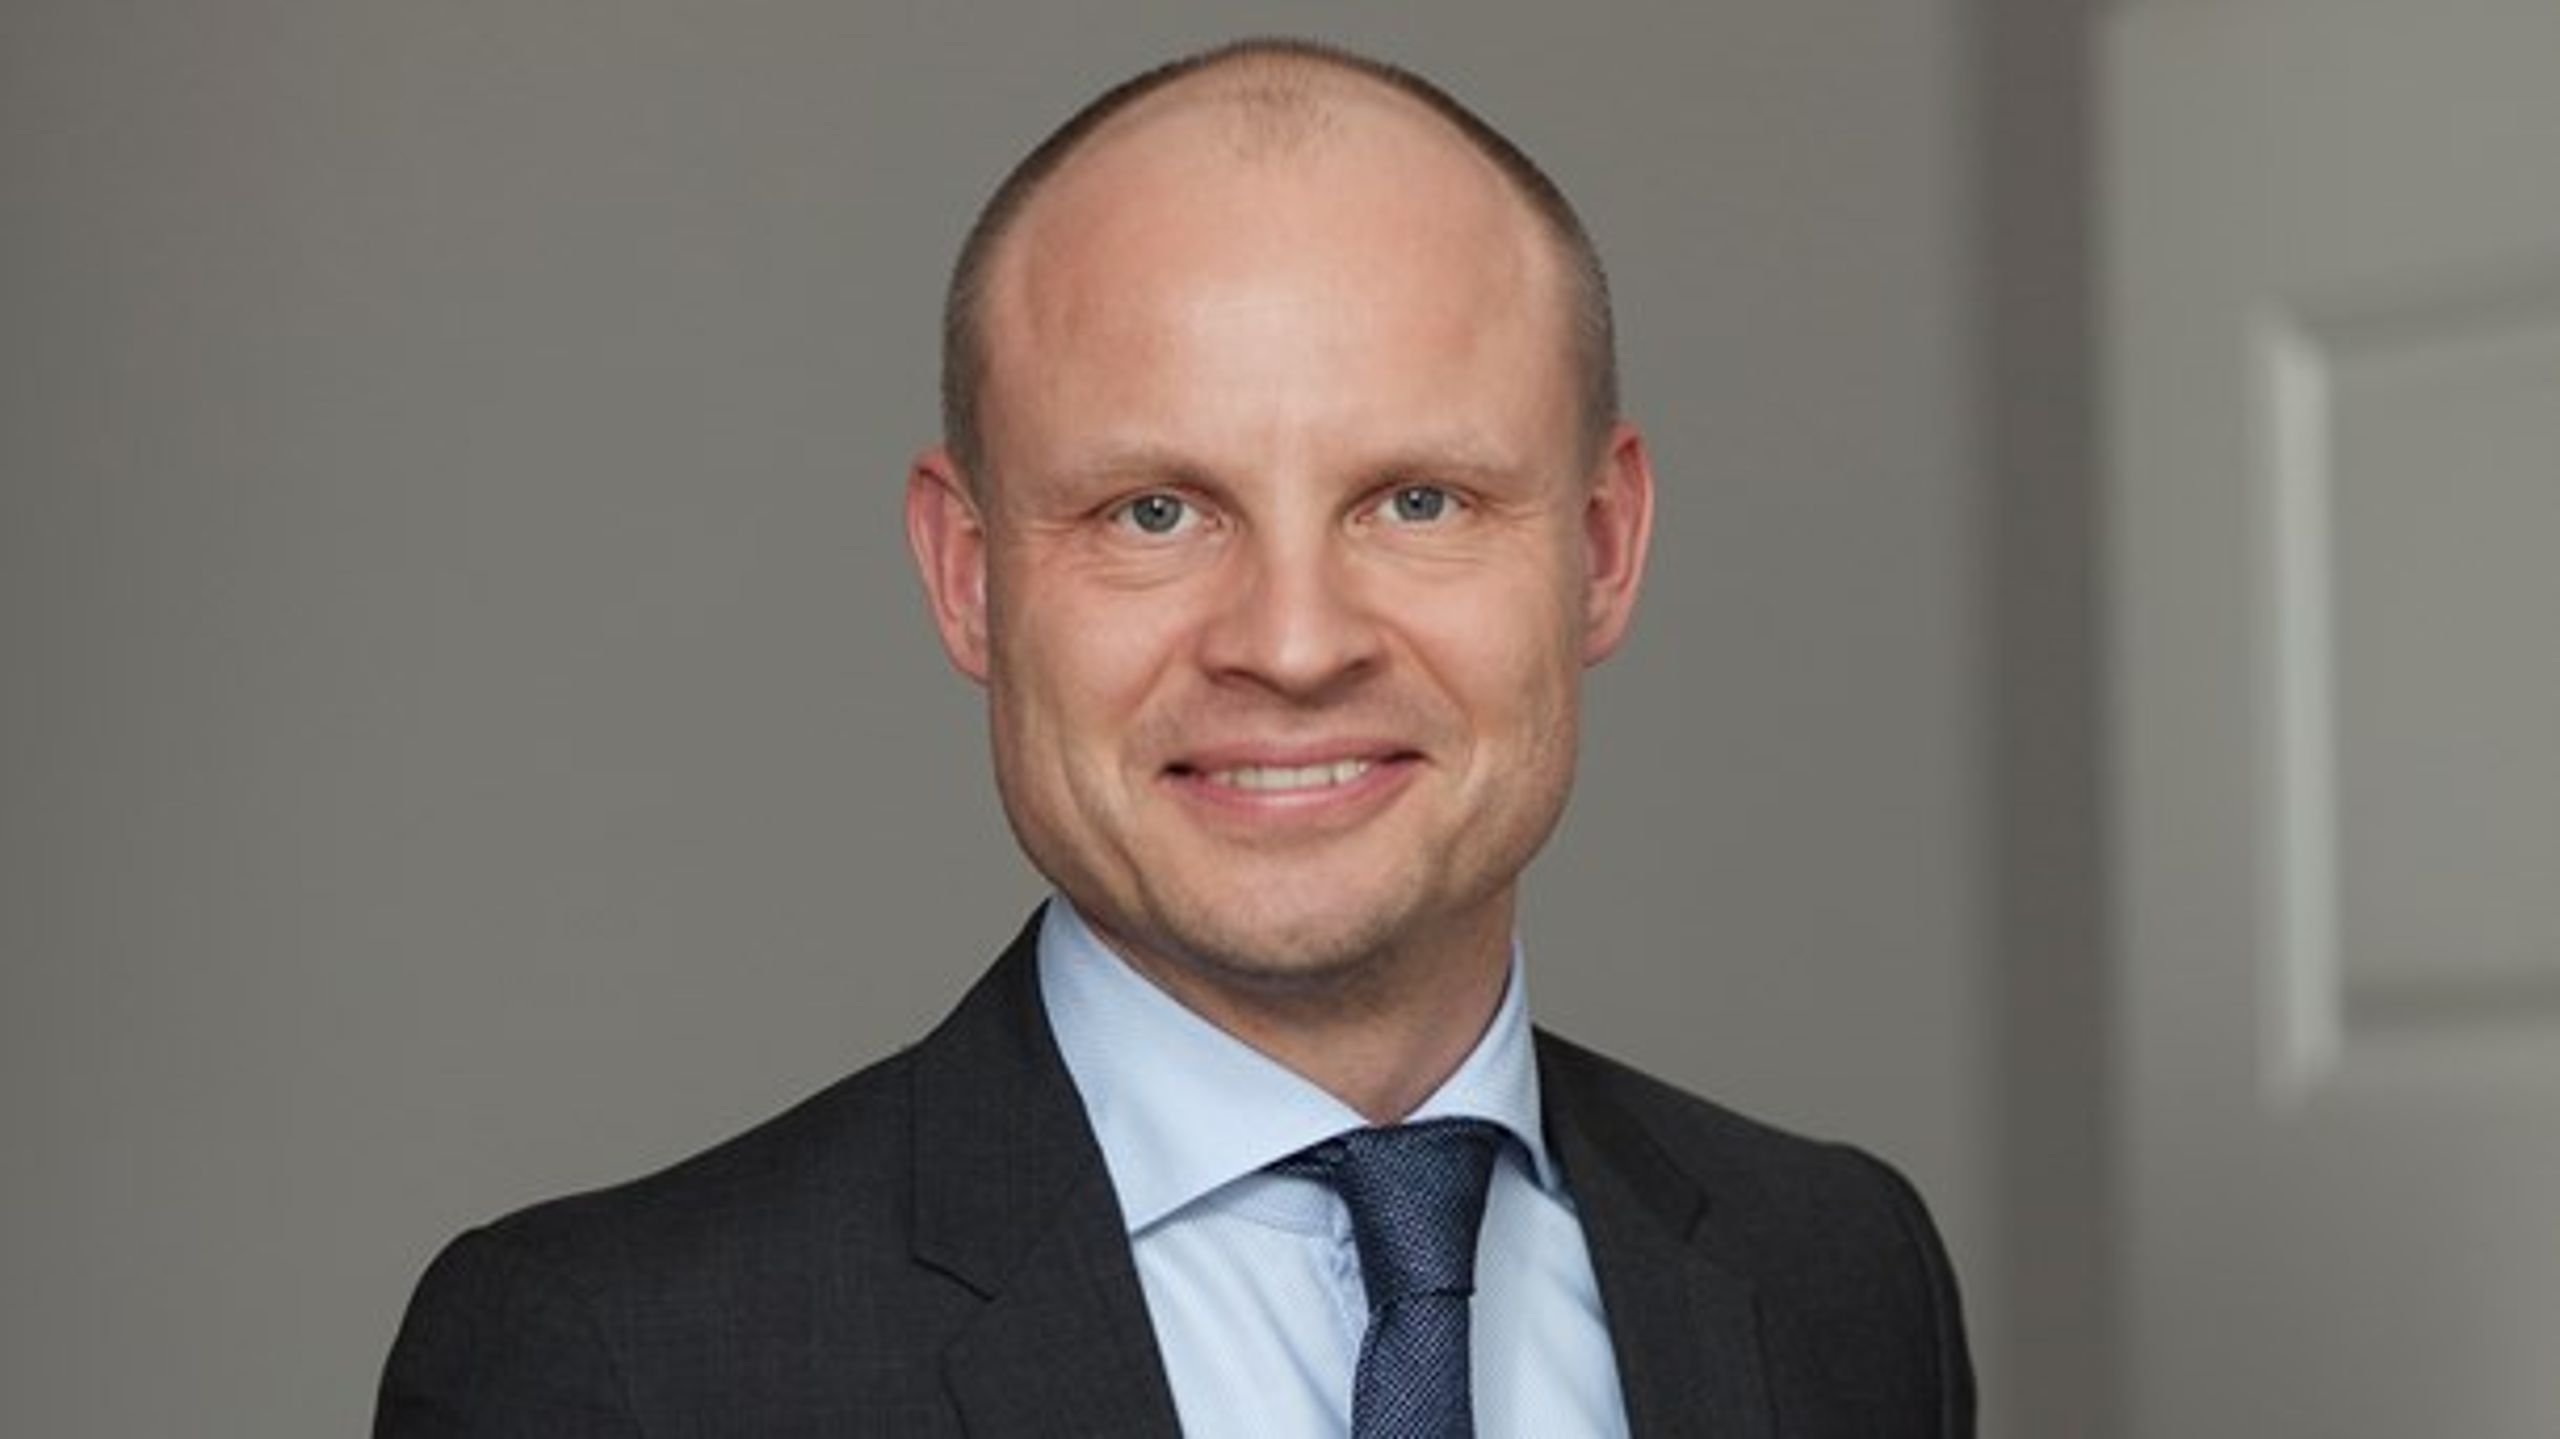 Arbejdet som afdelingschef har gjort Stig Henneberg til en nøglefigur i de seneste års finanslove.